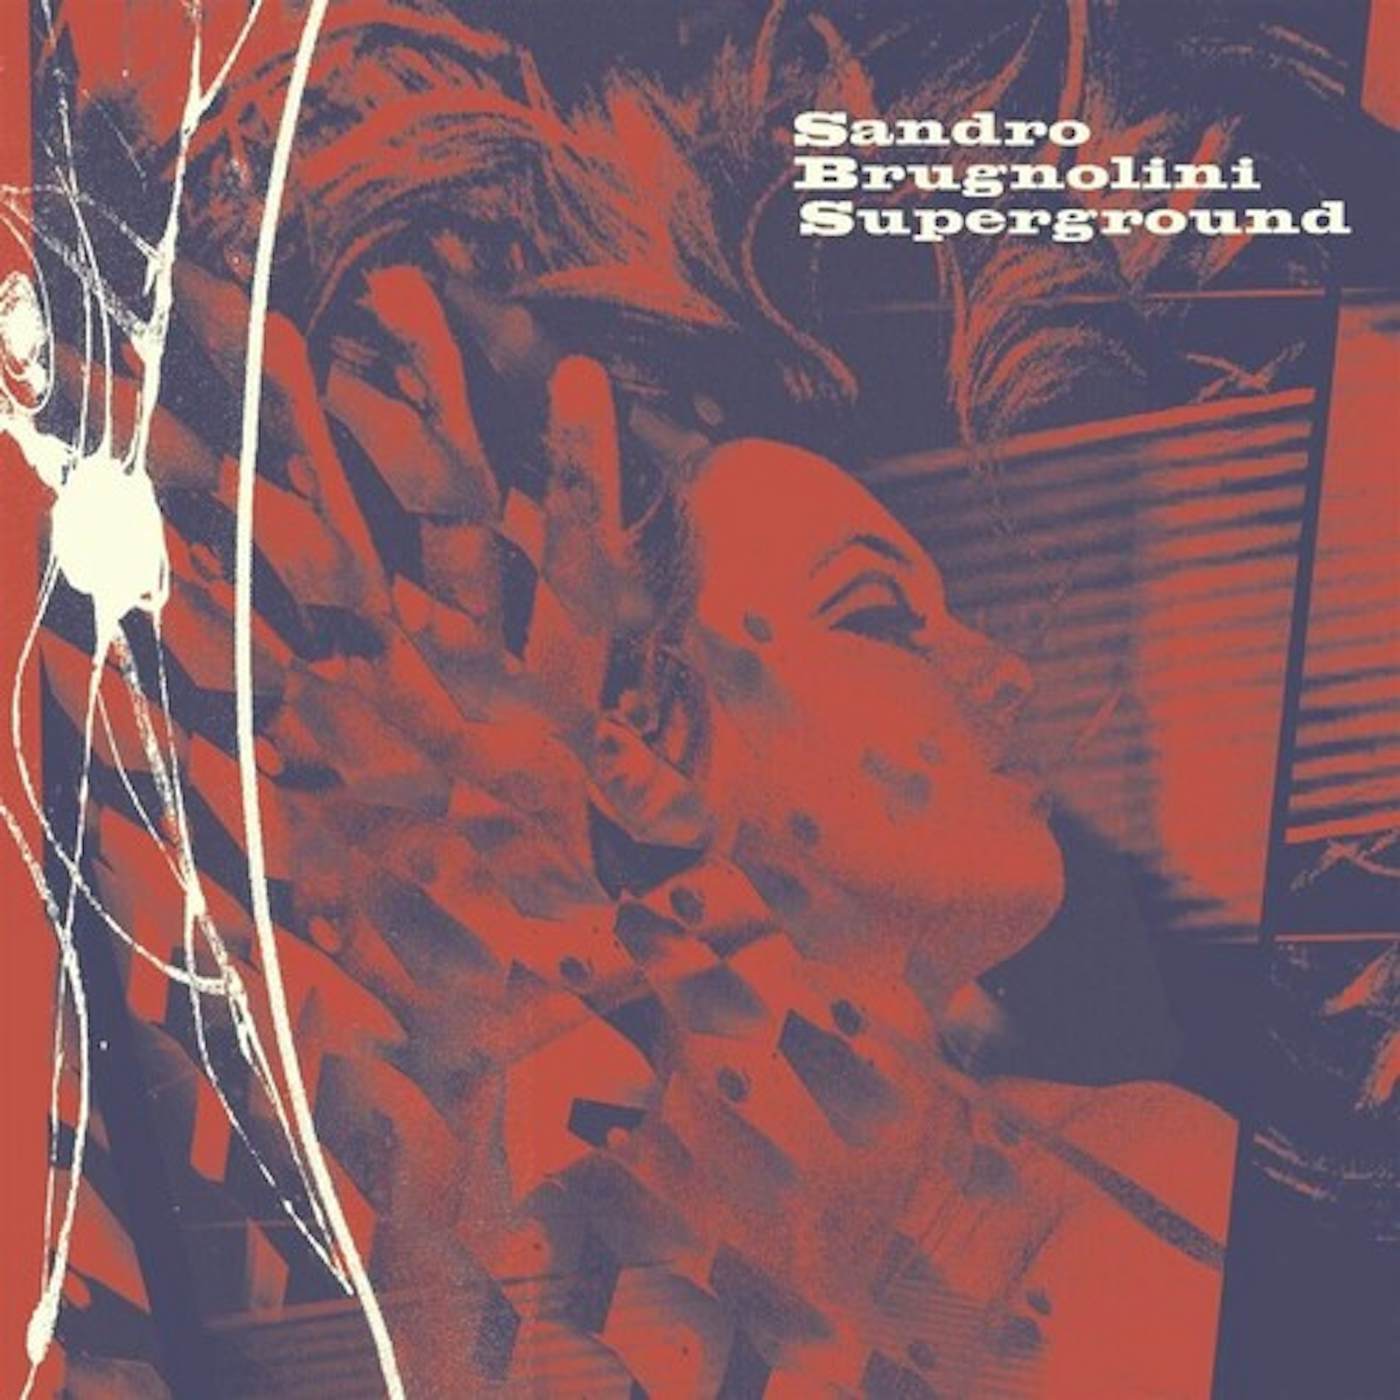 Sandro Brugnolini Superground Vinyl Record